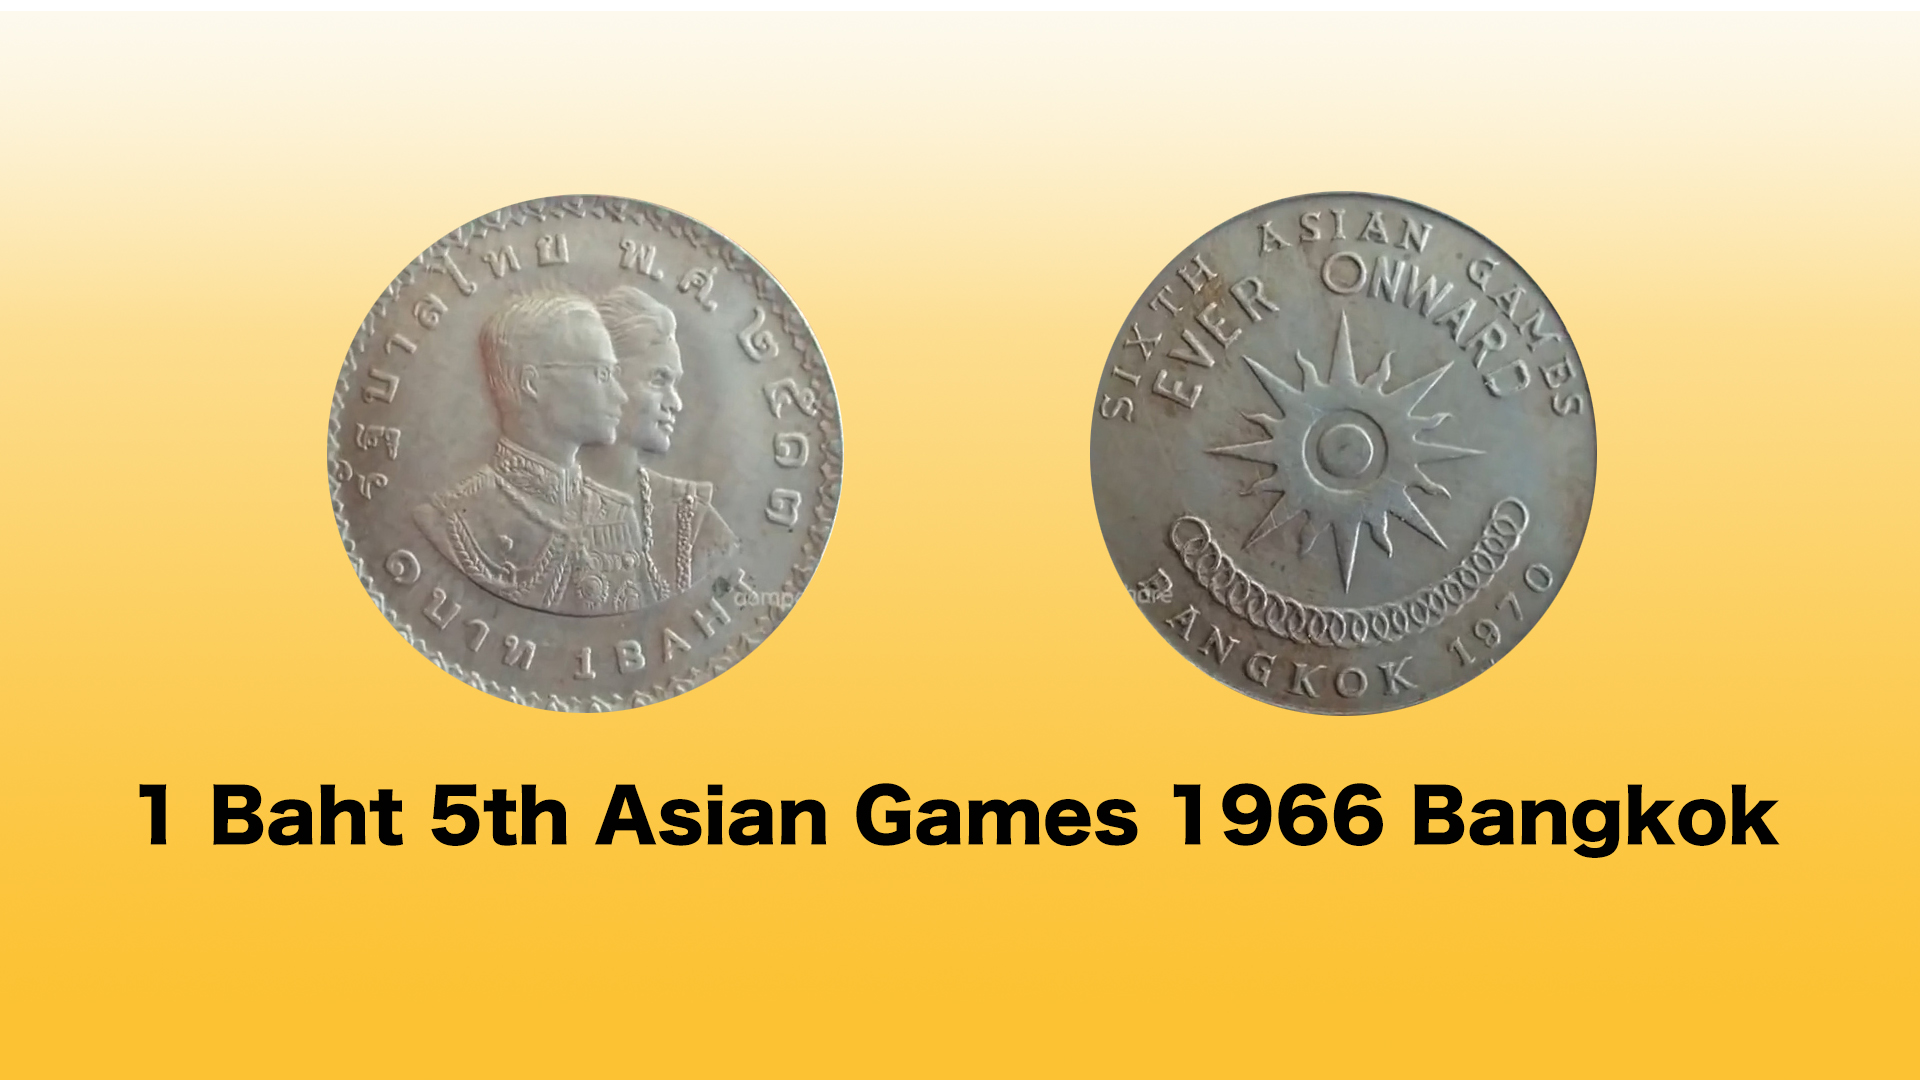  Bangkok 1970  | 6th Asian Games, Bangkok 1970